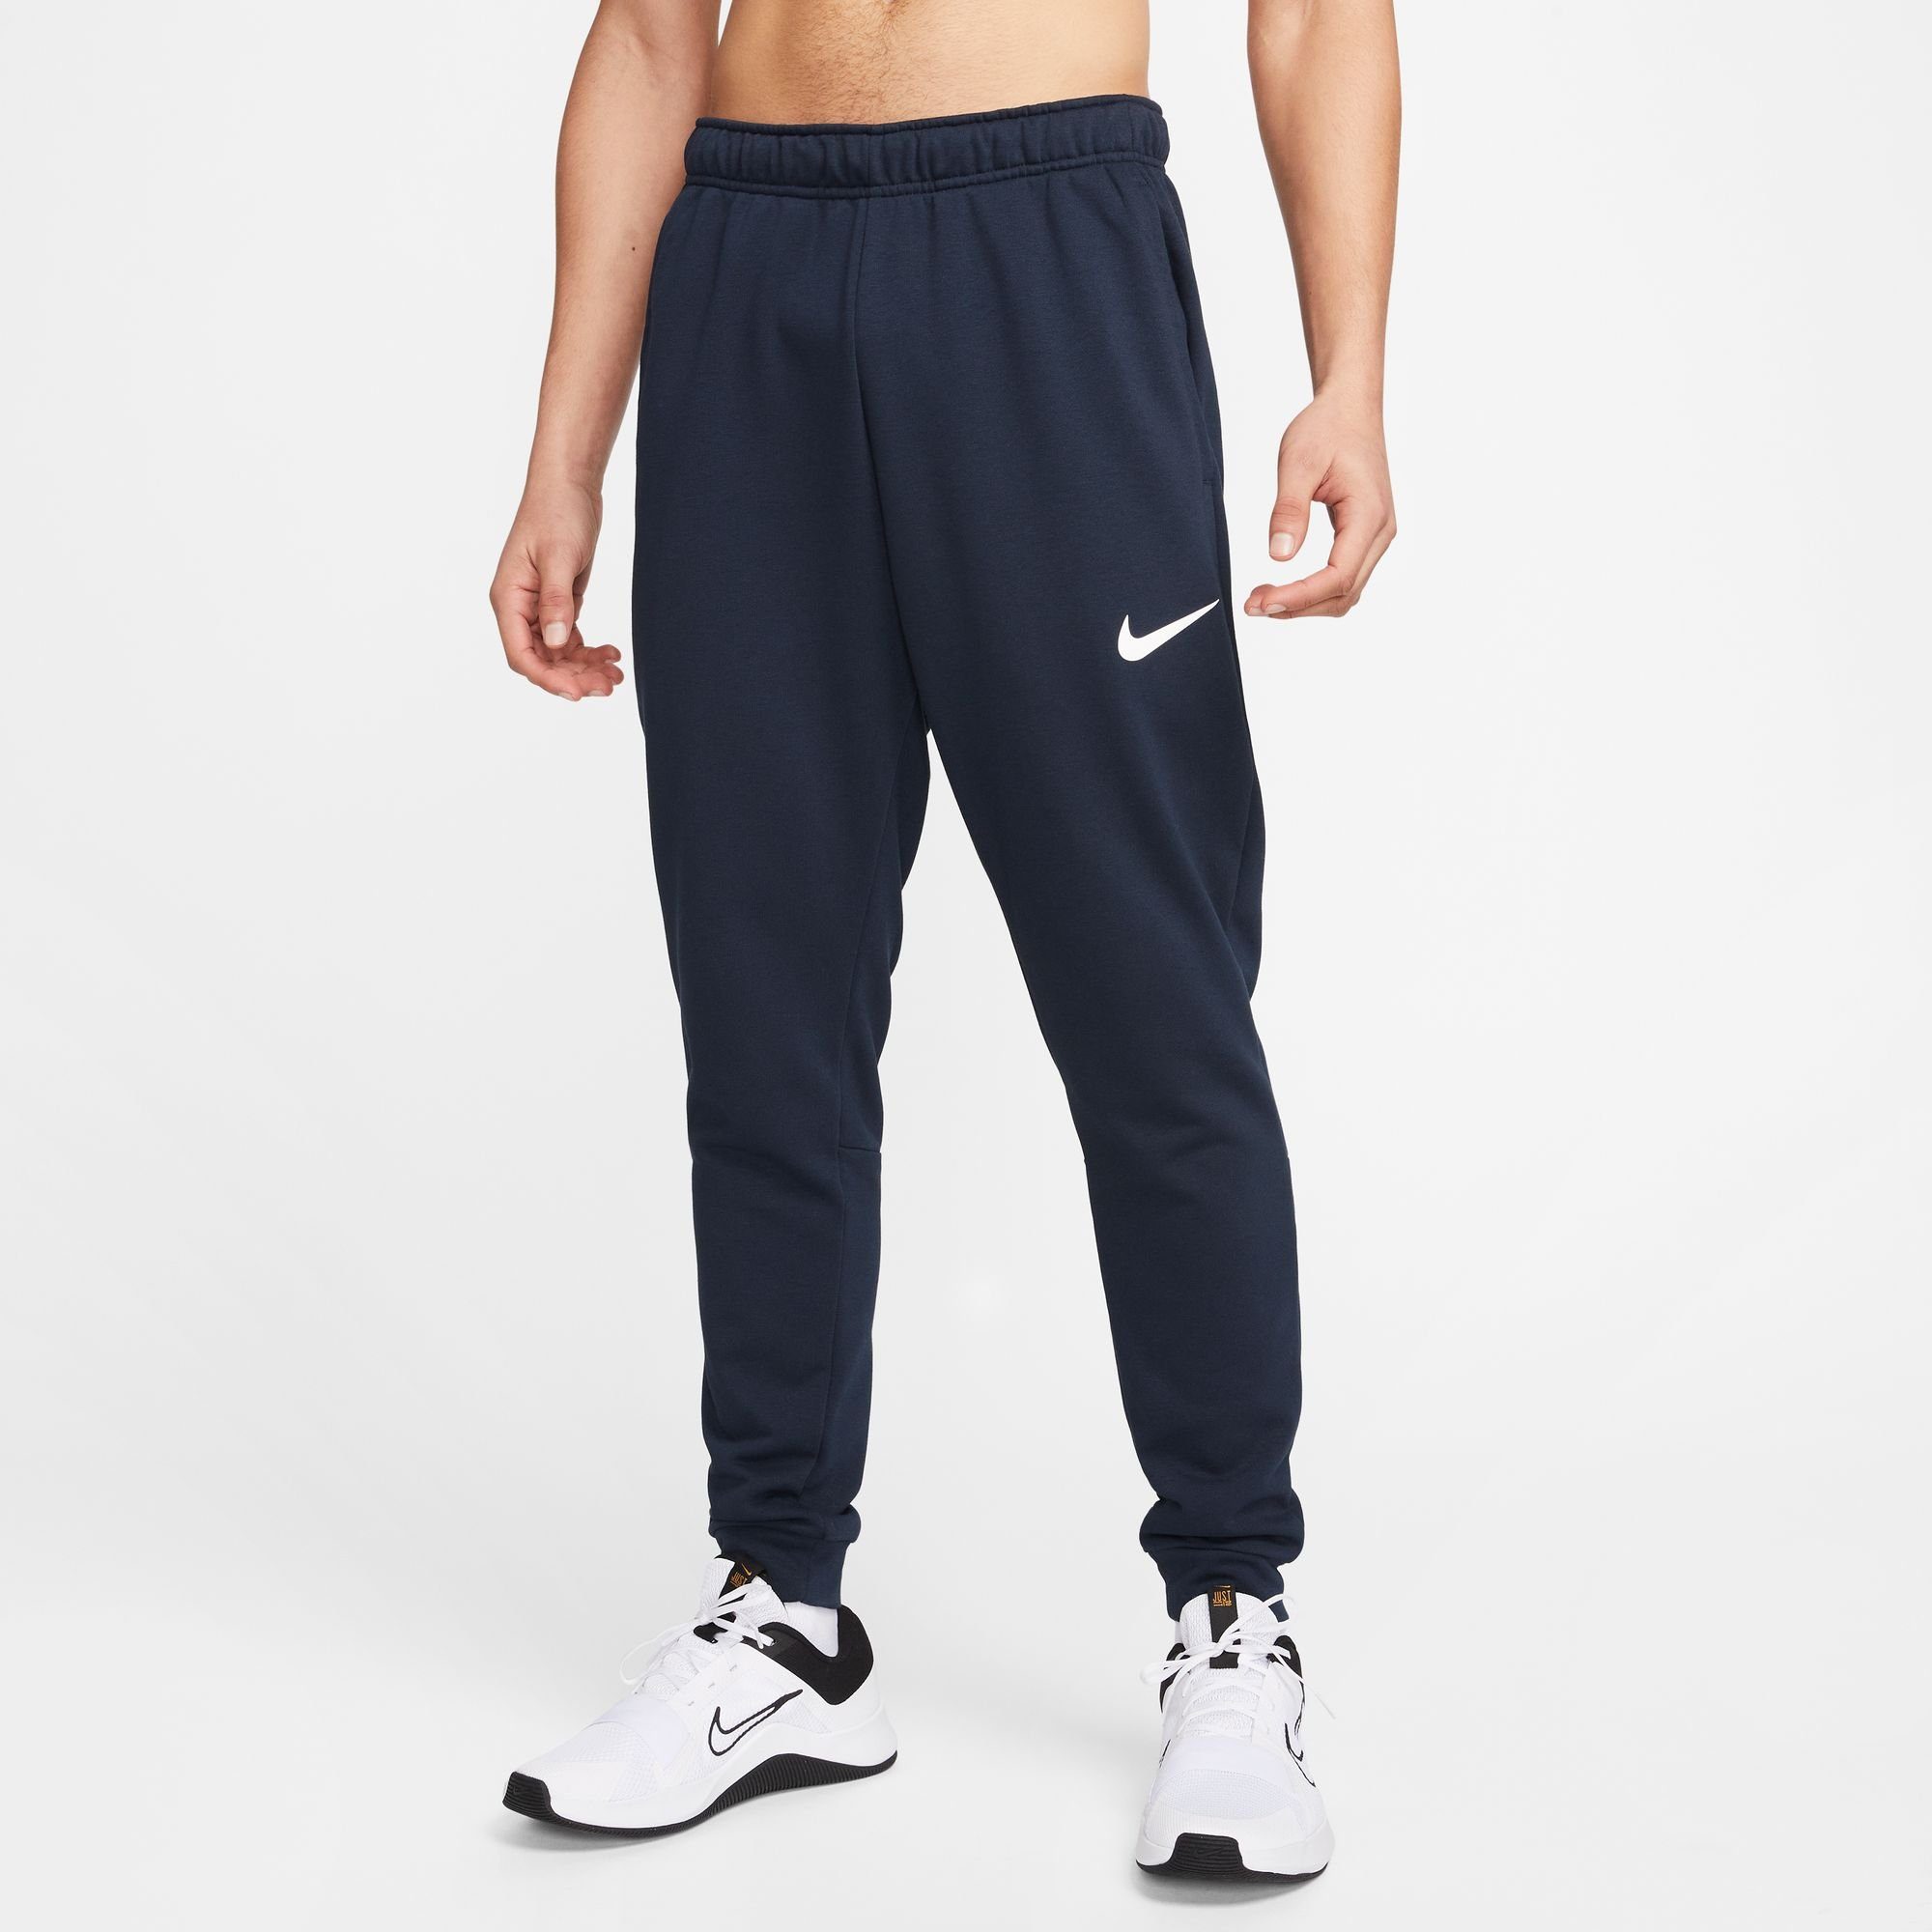 Nike Trainingshose DRI-FIT MEN'S TRAINING PANTS TAPERED OBSIDIAN/WHITE